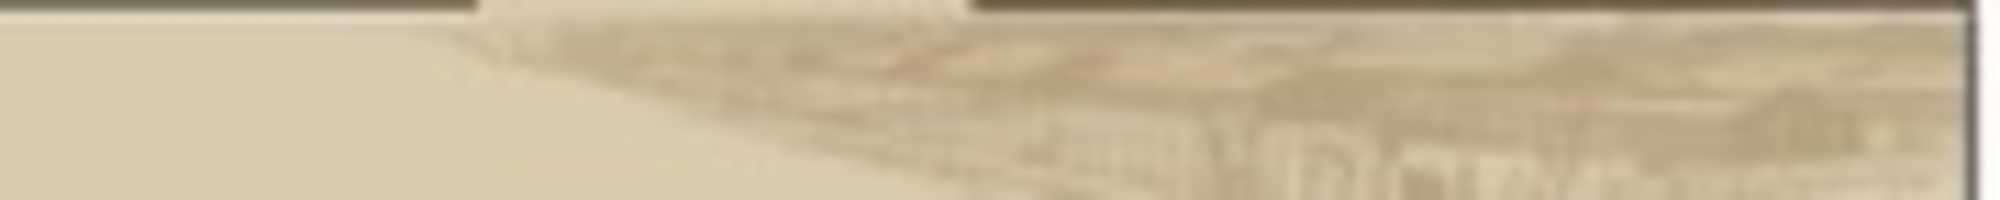 বিনামূল্যে ডাউনলোড হিউম্যান ফ্যাট যুদ্ধের সময় জিডানস্কে সাবান তৈরি করতে ব্যবহৃত হয়েছিল বিনামূল্যে ছবি বা ছবি জিআইএমপি অনলাইন ইমেজ এডিটর দিয়ে সম্পাদনা করা হবে